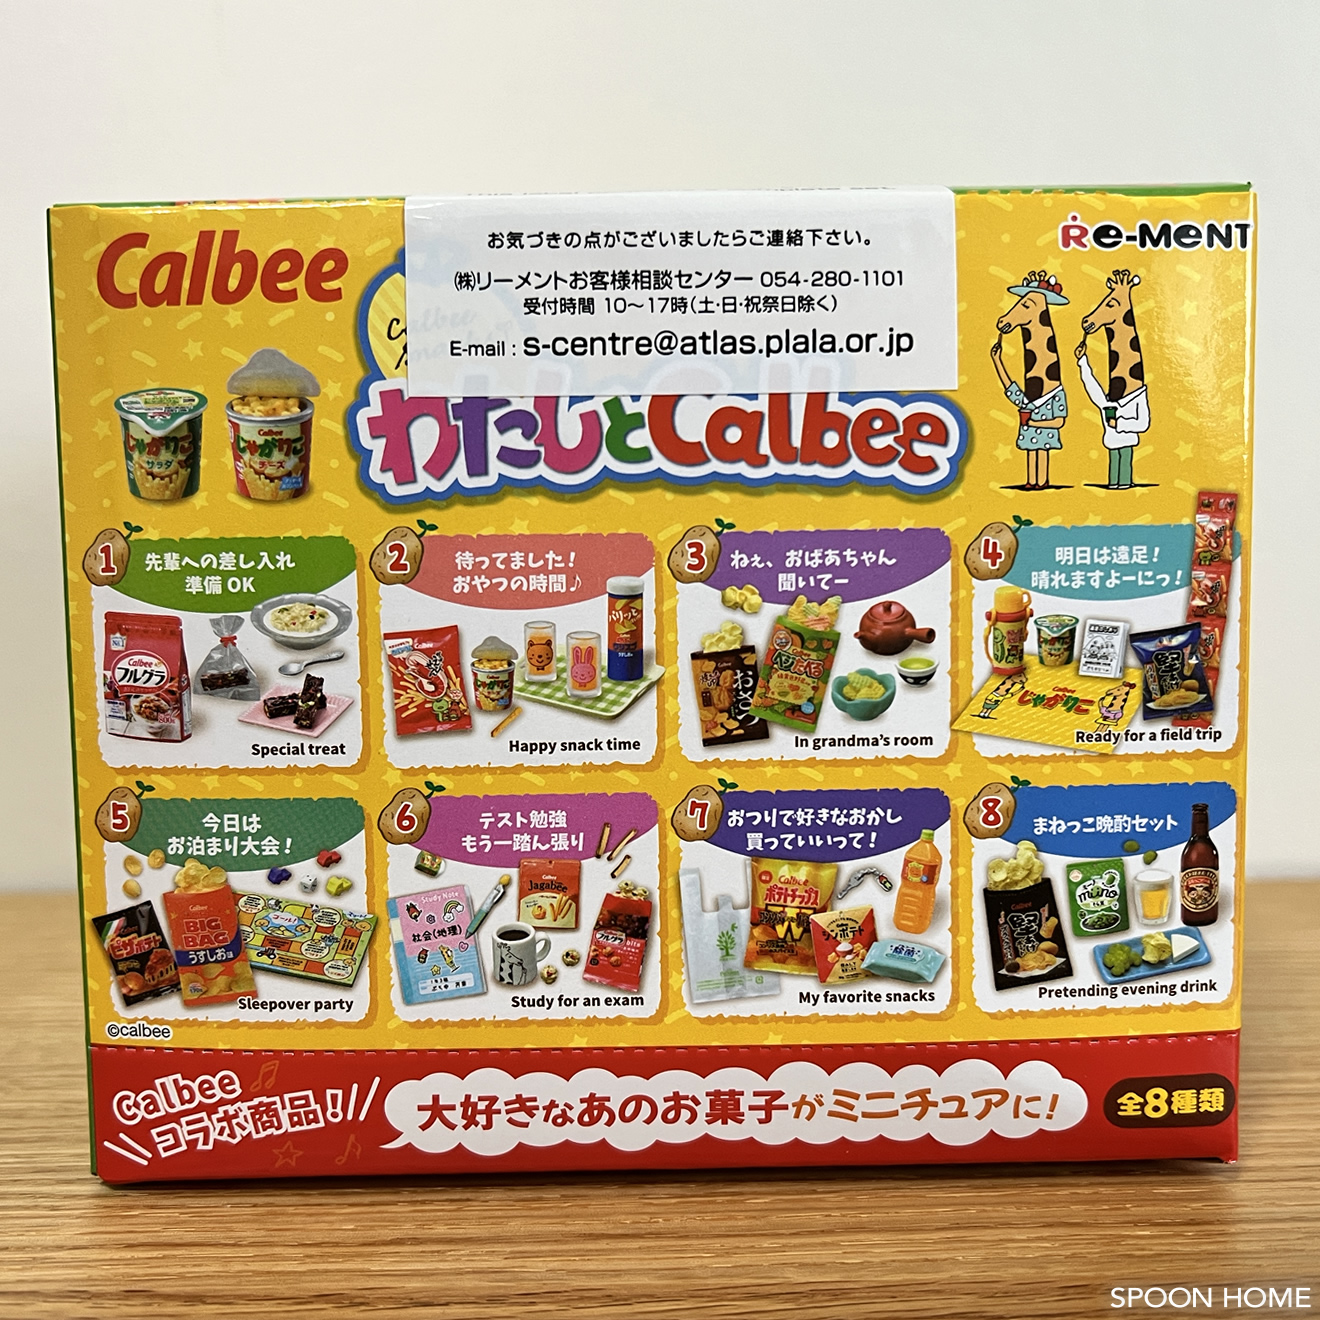 カルビーお菓子のリーメント「わたしとCalbee BOX」が可愛い